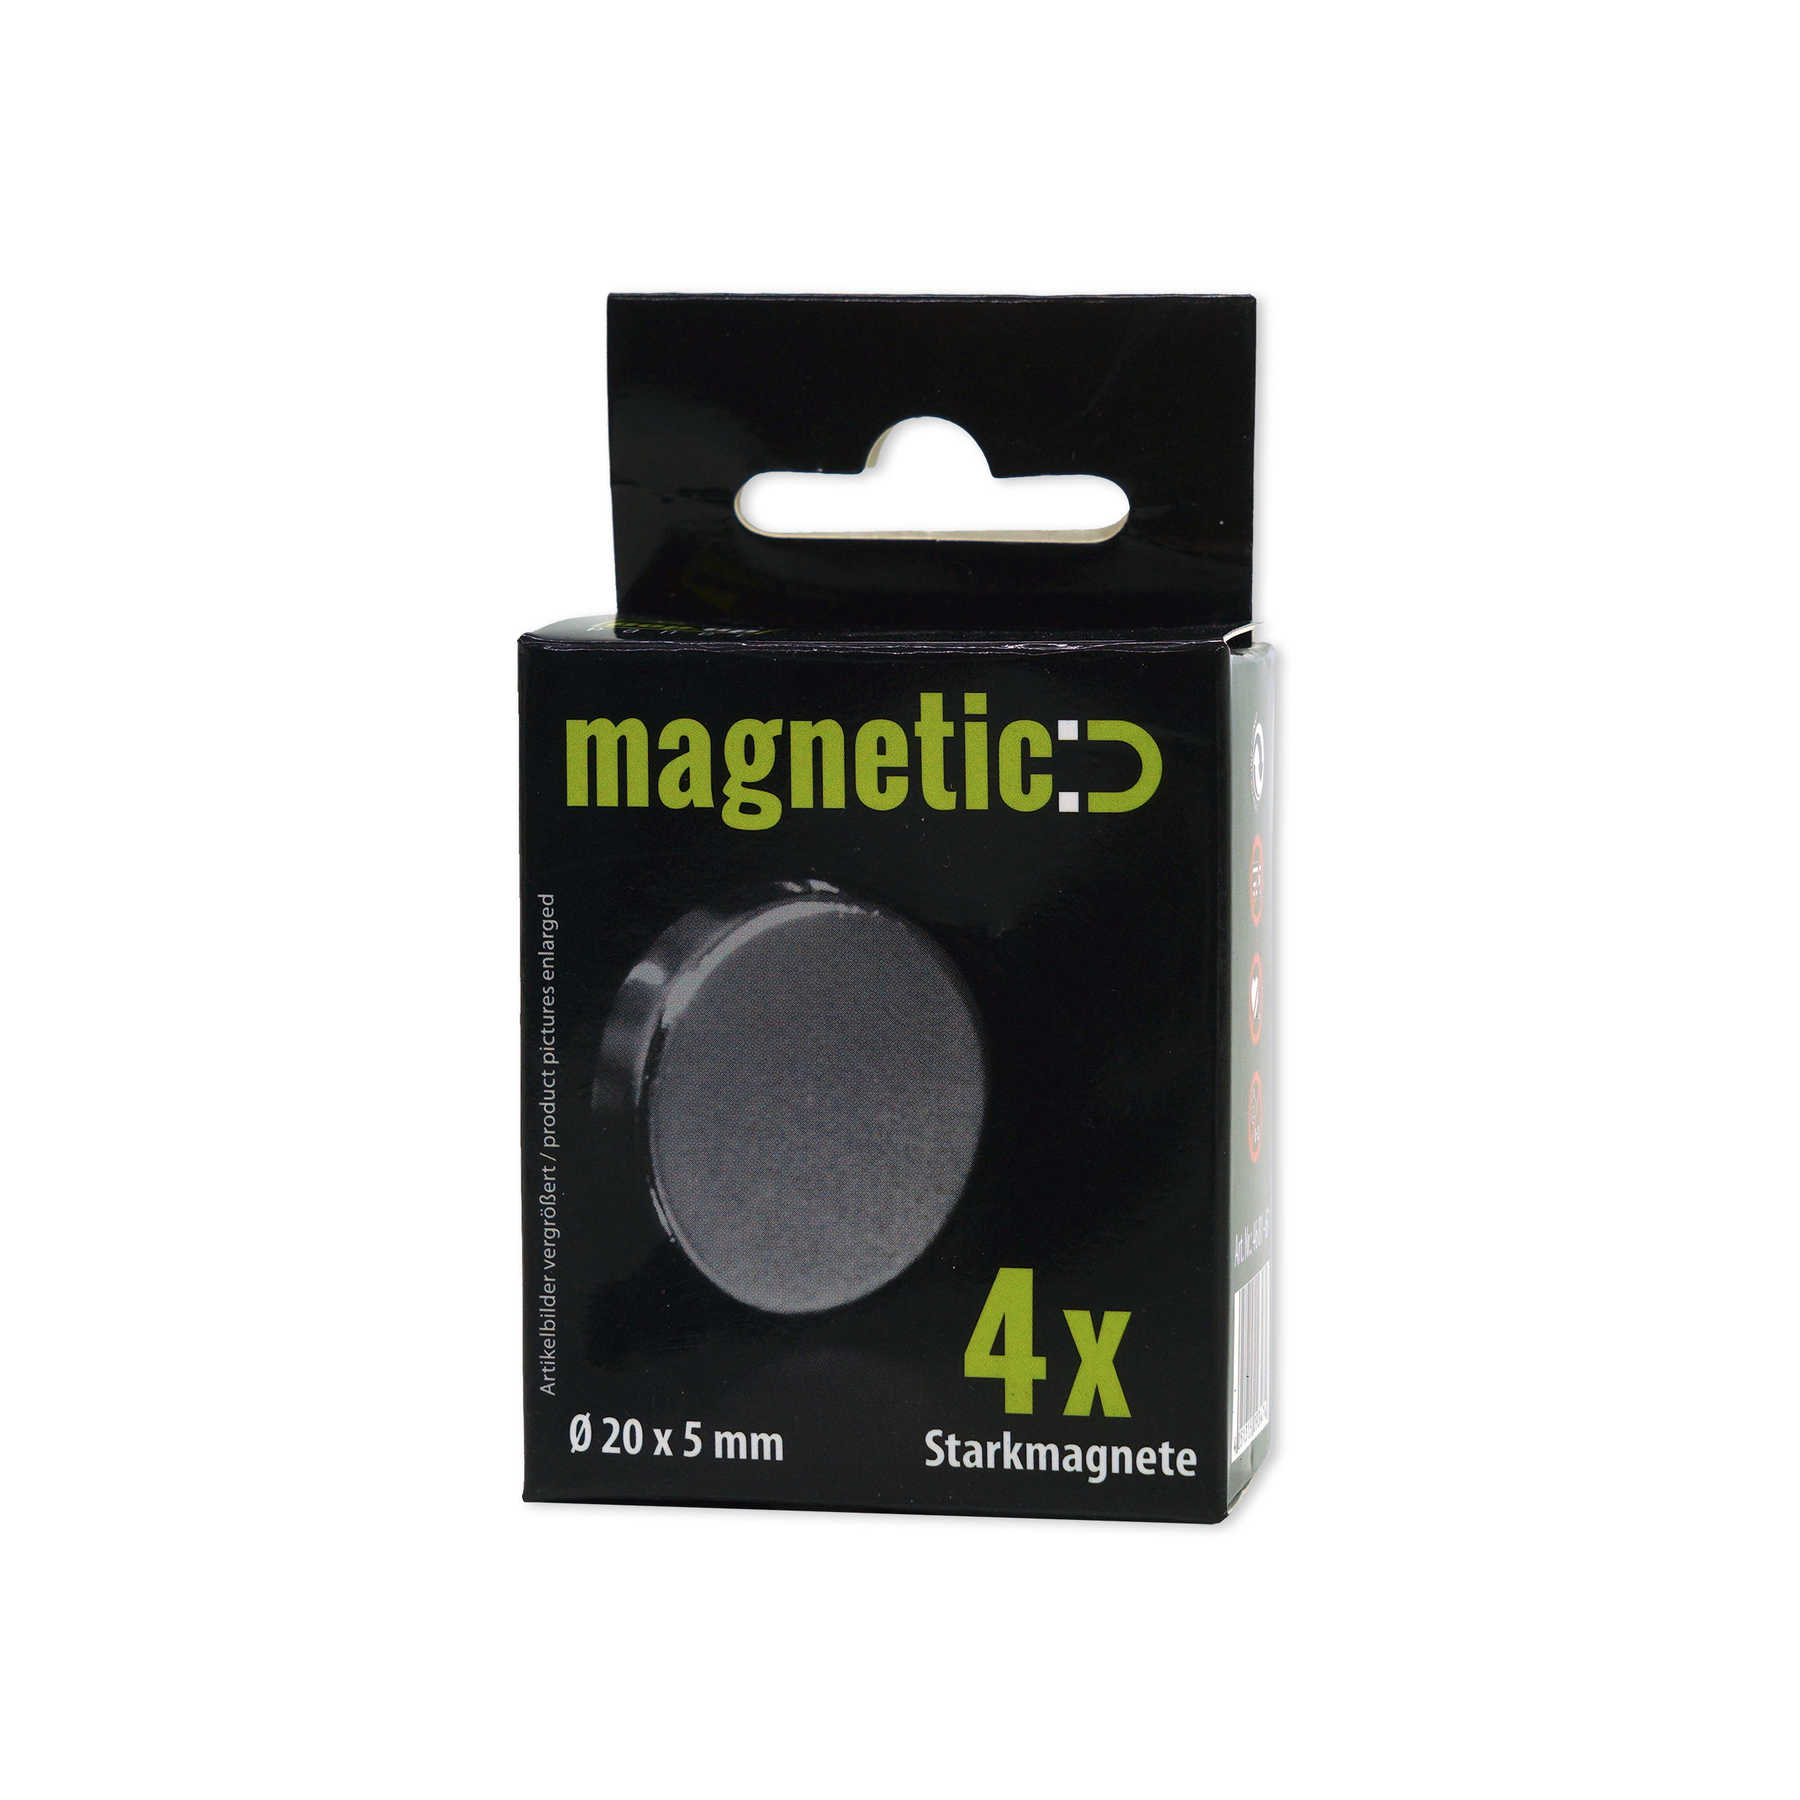             Set van 4 ronde sterke magneten in 20 x 5 mm
        